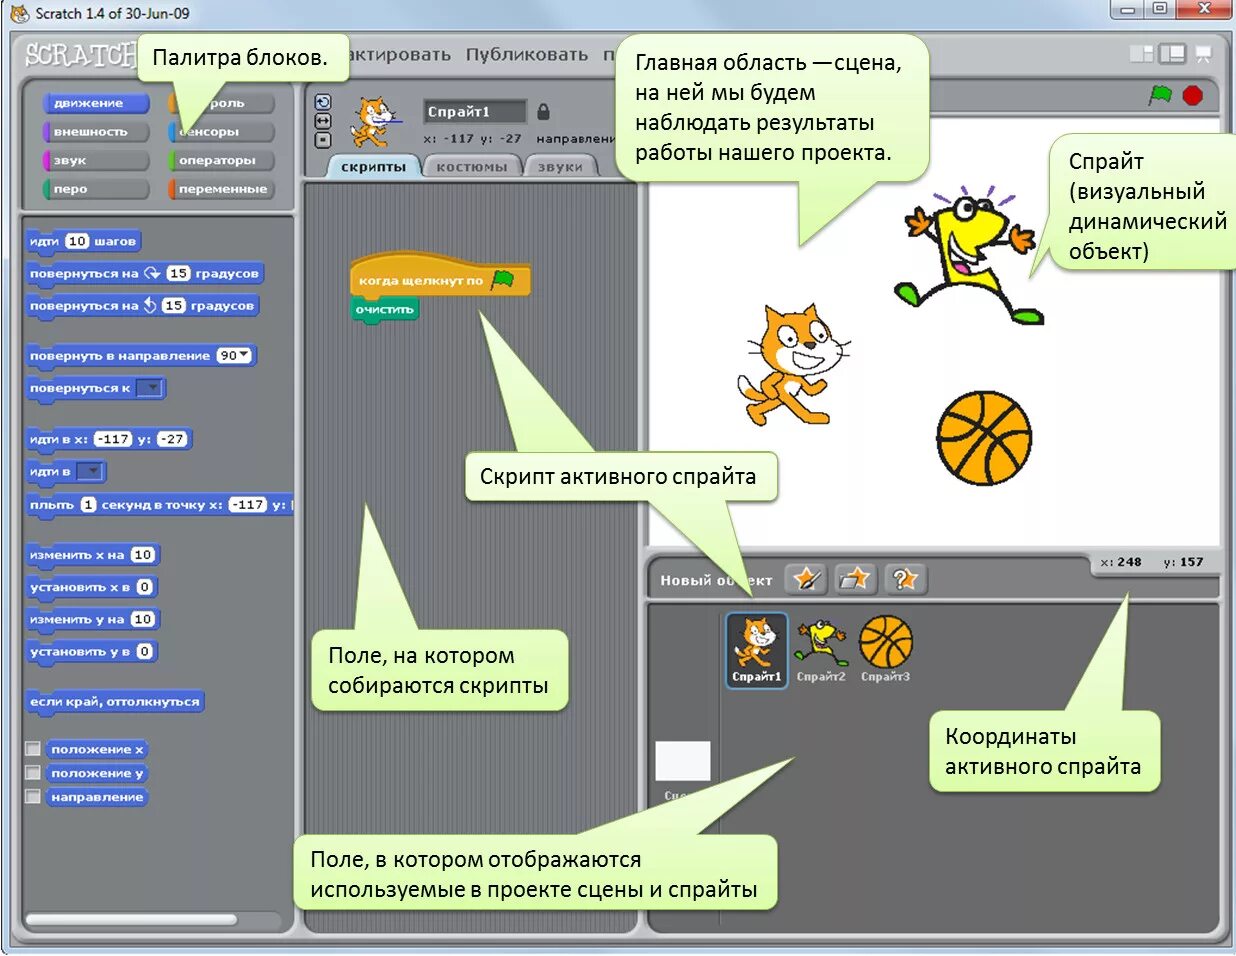 Скрипт на ходьбу. Scratch программирование. Программа Scratch. Элементы среды скретч. Интерфейс программы Scratch.